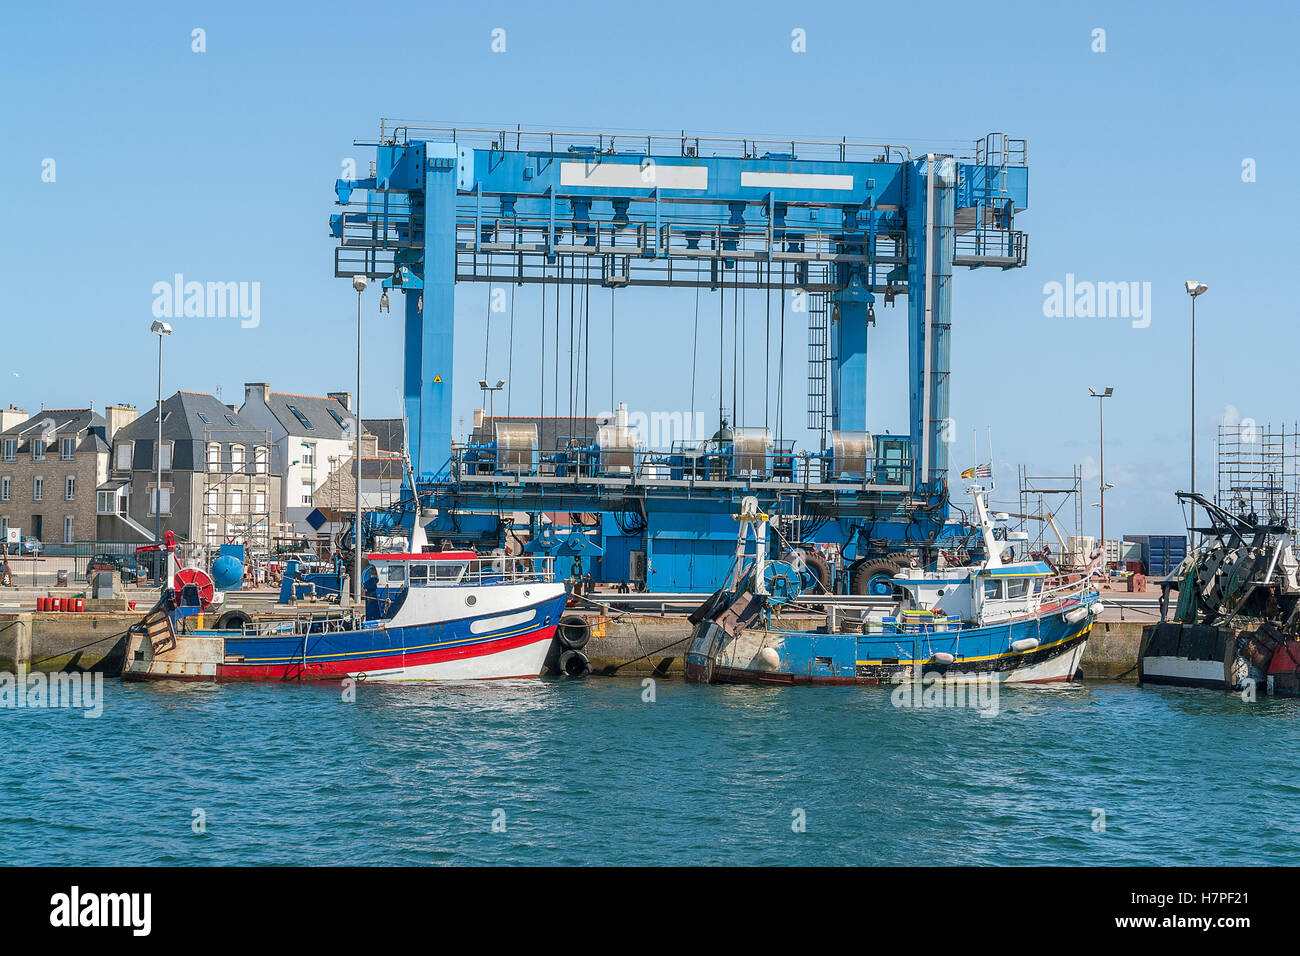 Hafen-Landschaft bei Le Guilvinec, einer Gemeinde im Departement Finistere Bretagne im Nordwesten Frankreichs. Stockfoto